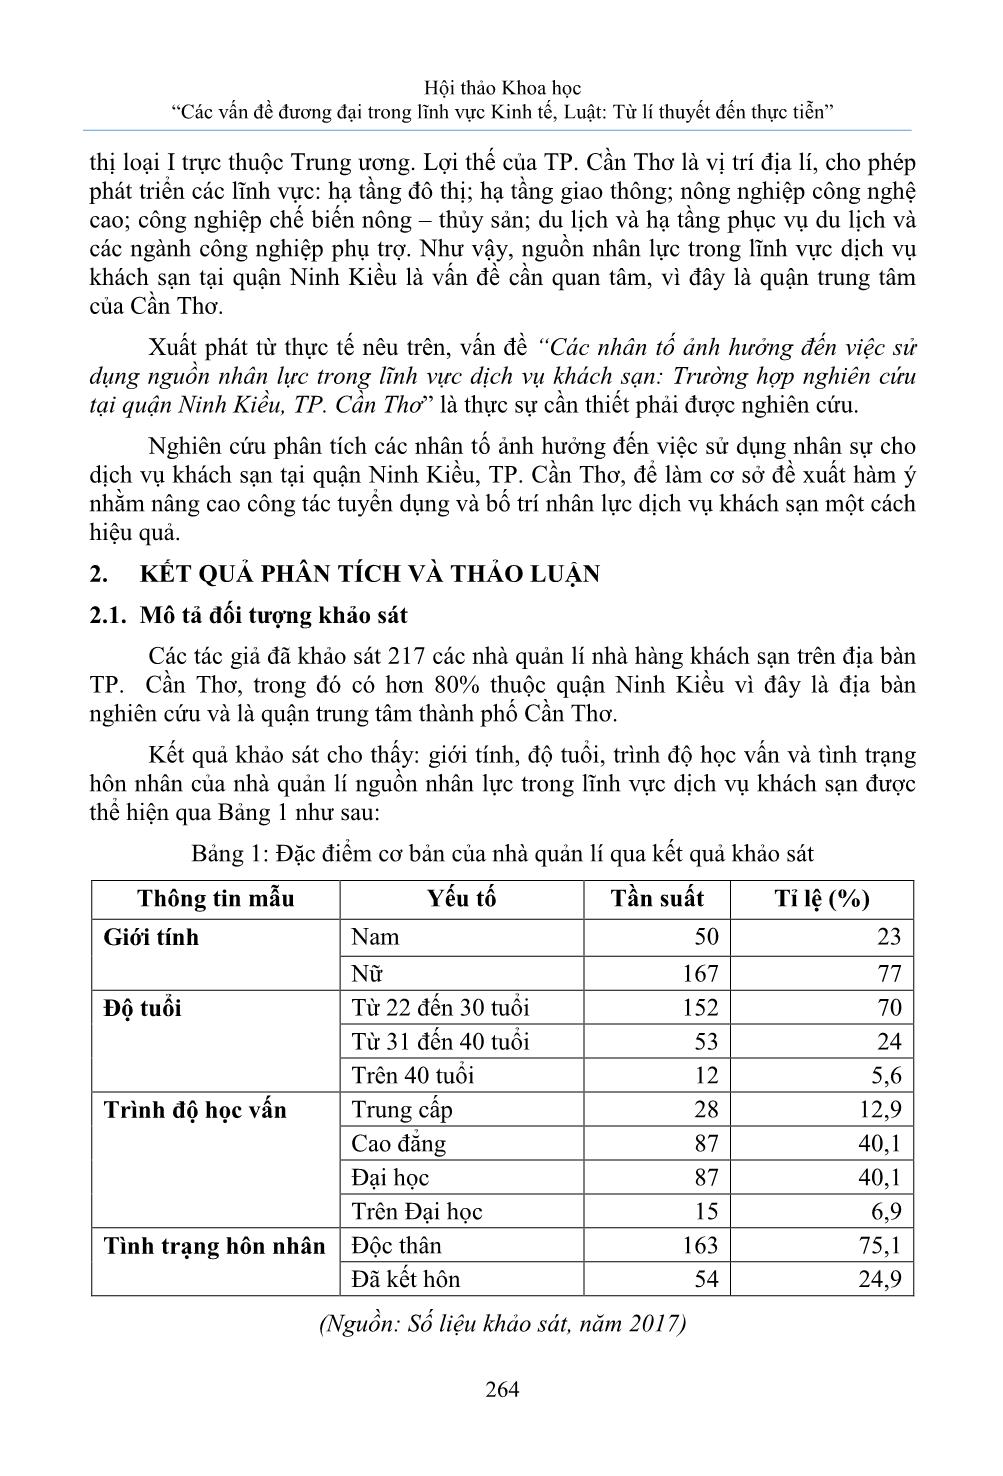 Các nhân tố ảnh hưởng đến việc sử dụng nguồn nhân lực trong lĩnh vực dịch vụ khách sạn: Trường hợp nghiên cứu tại quận Ninh Kiều, thành phố Cần Thơ trang 2